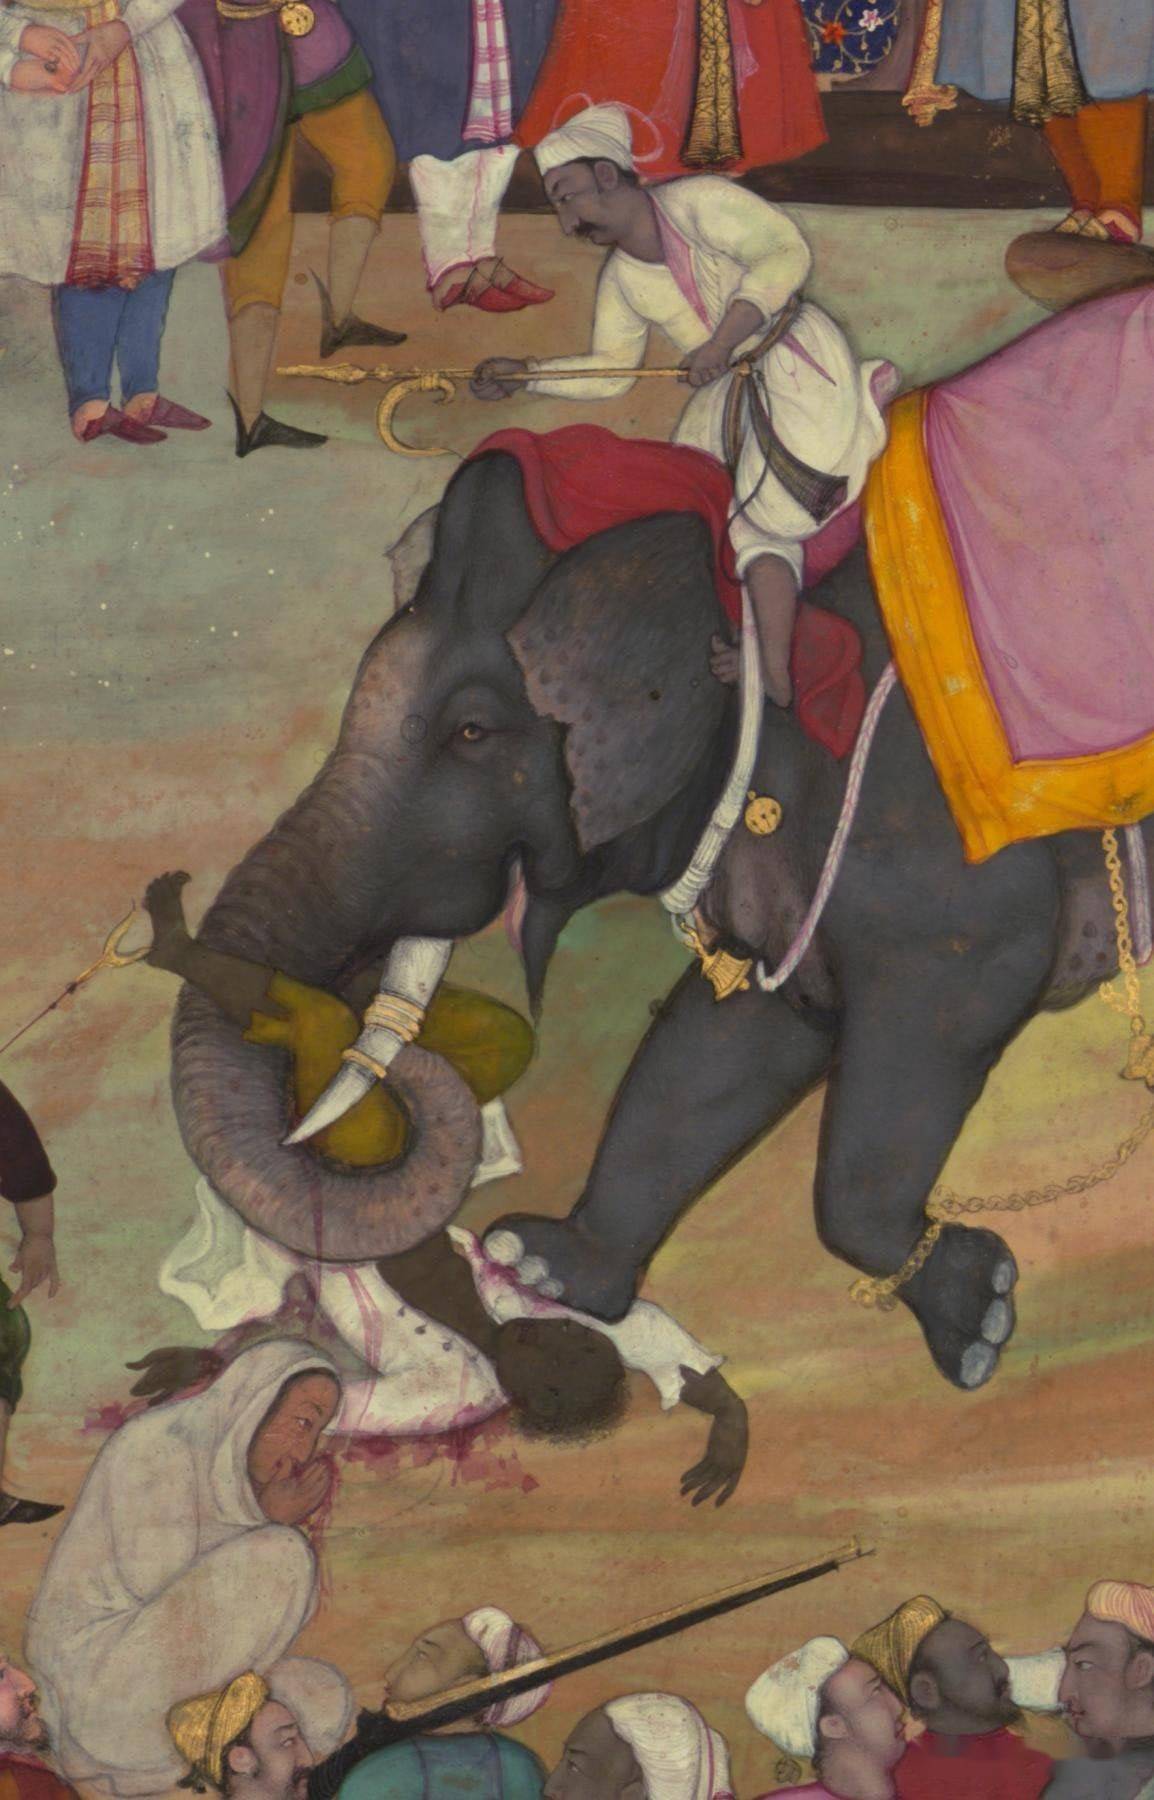 大象踩一脚有多大力气 人被大象踩一脚会死吗